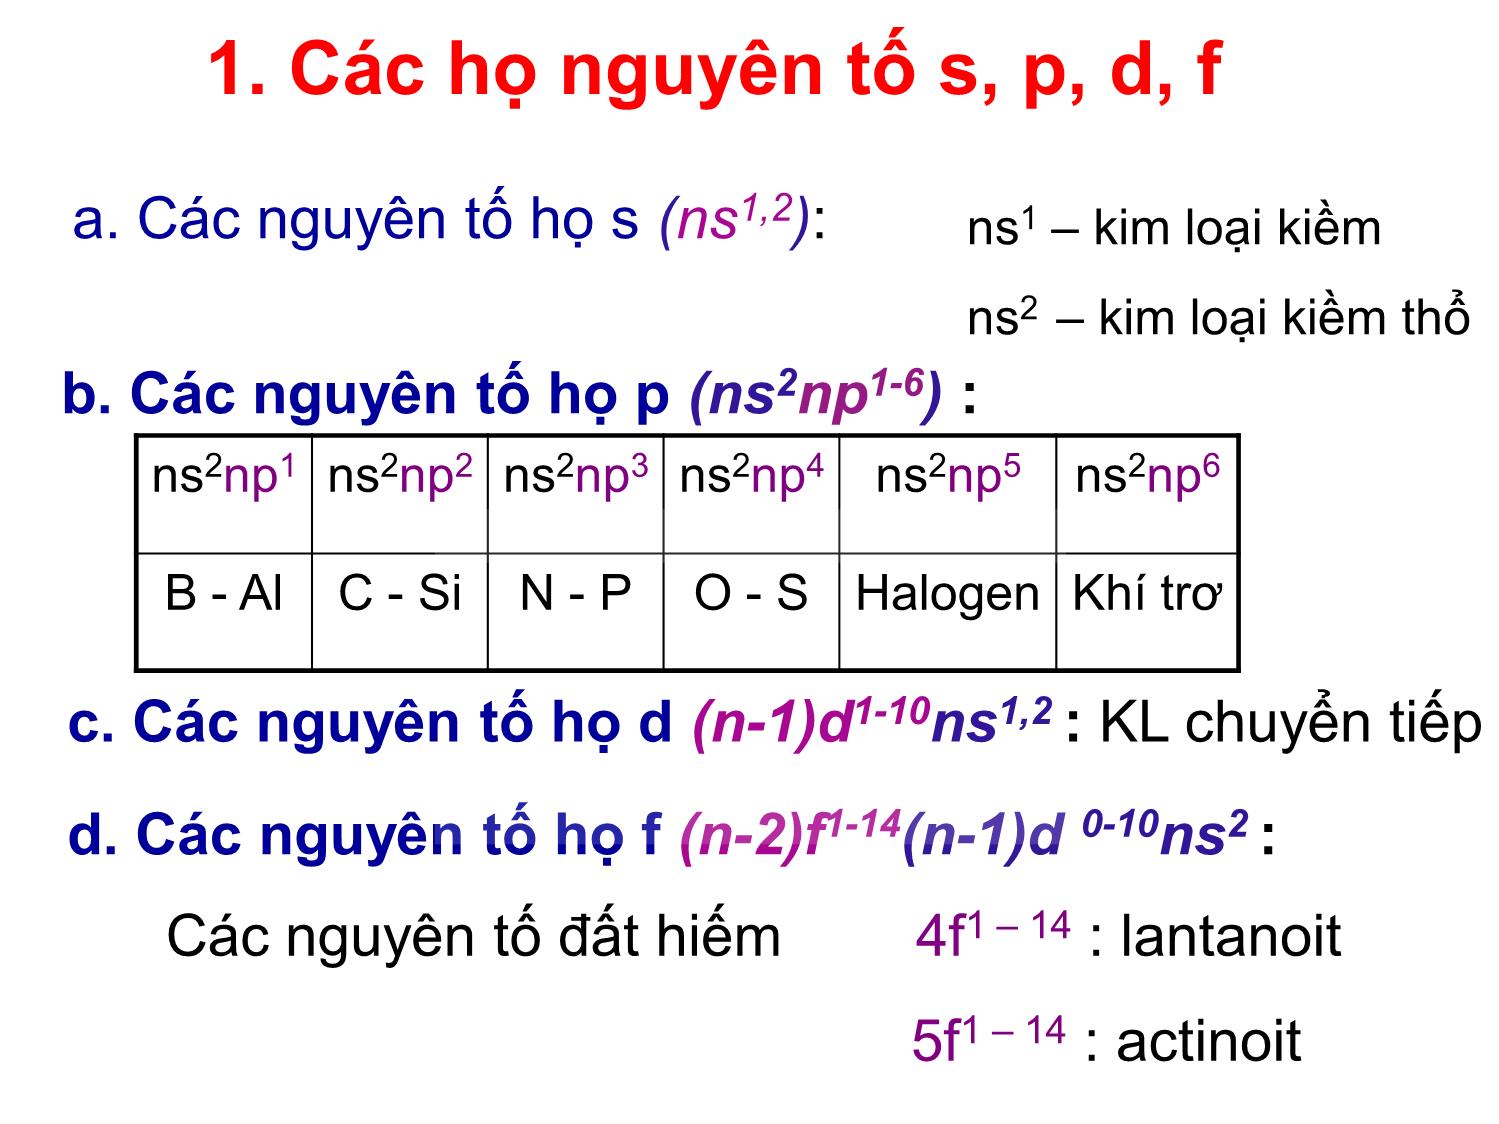 Bài giảng Hóa đại cương: Hệ thống tuần hoàn các nguyên tố hóa học - Nguyễn Minh Kha trang 8